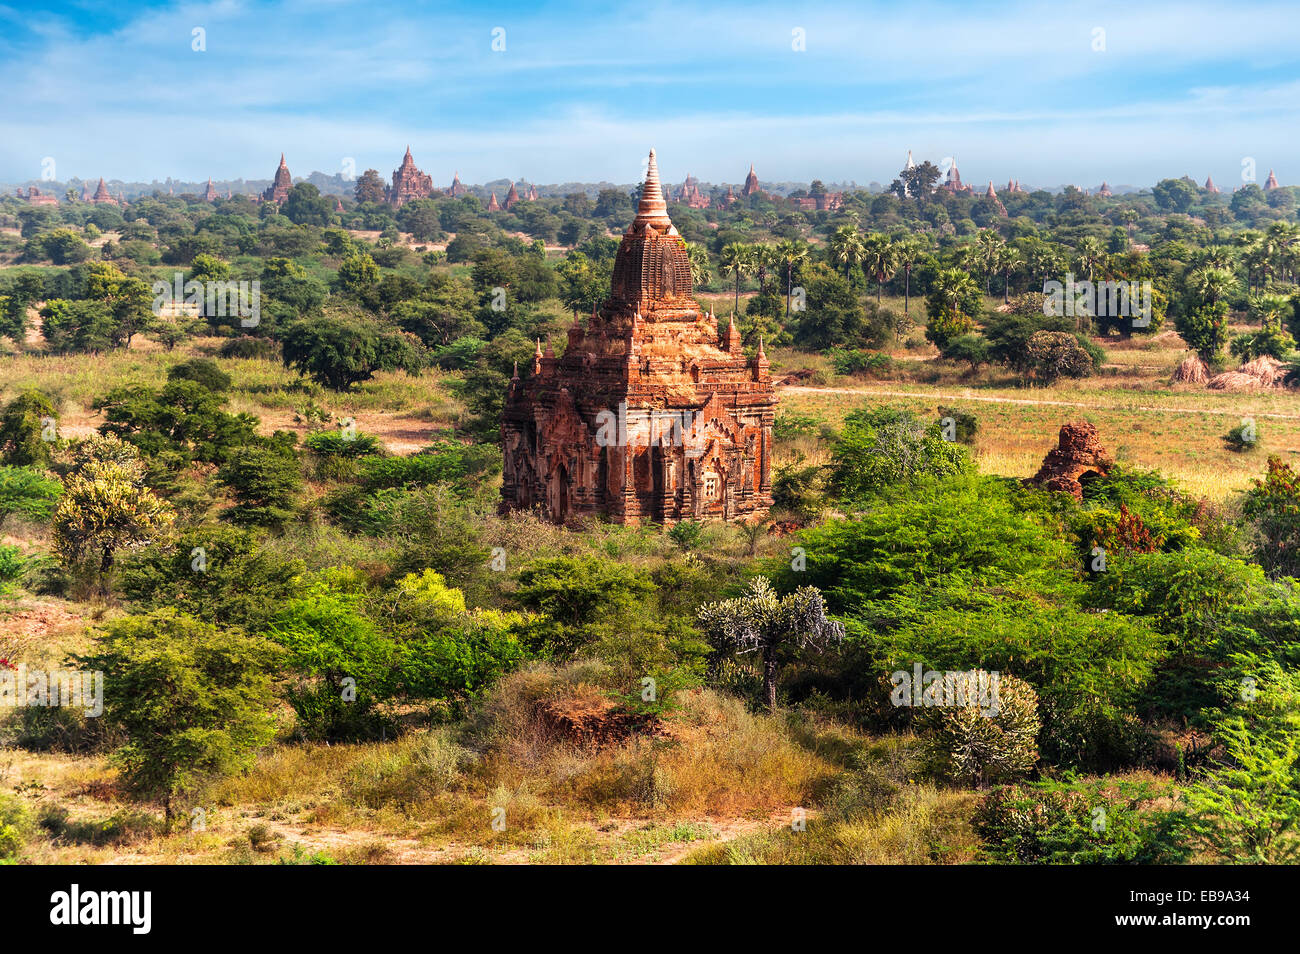 Los paisajes y destinos de viaje. Arquitectura asombrosa de antiguos templos budistas en Reino de Bagan, Myanmar (Birmania) Foto de stock